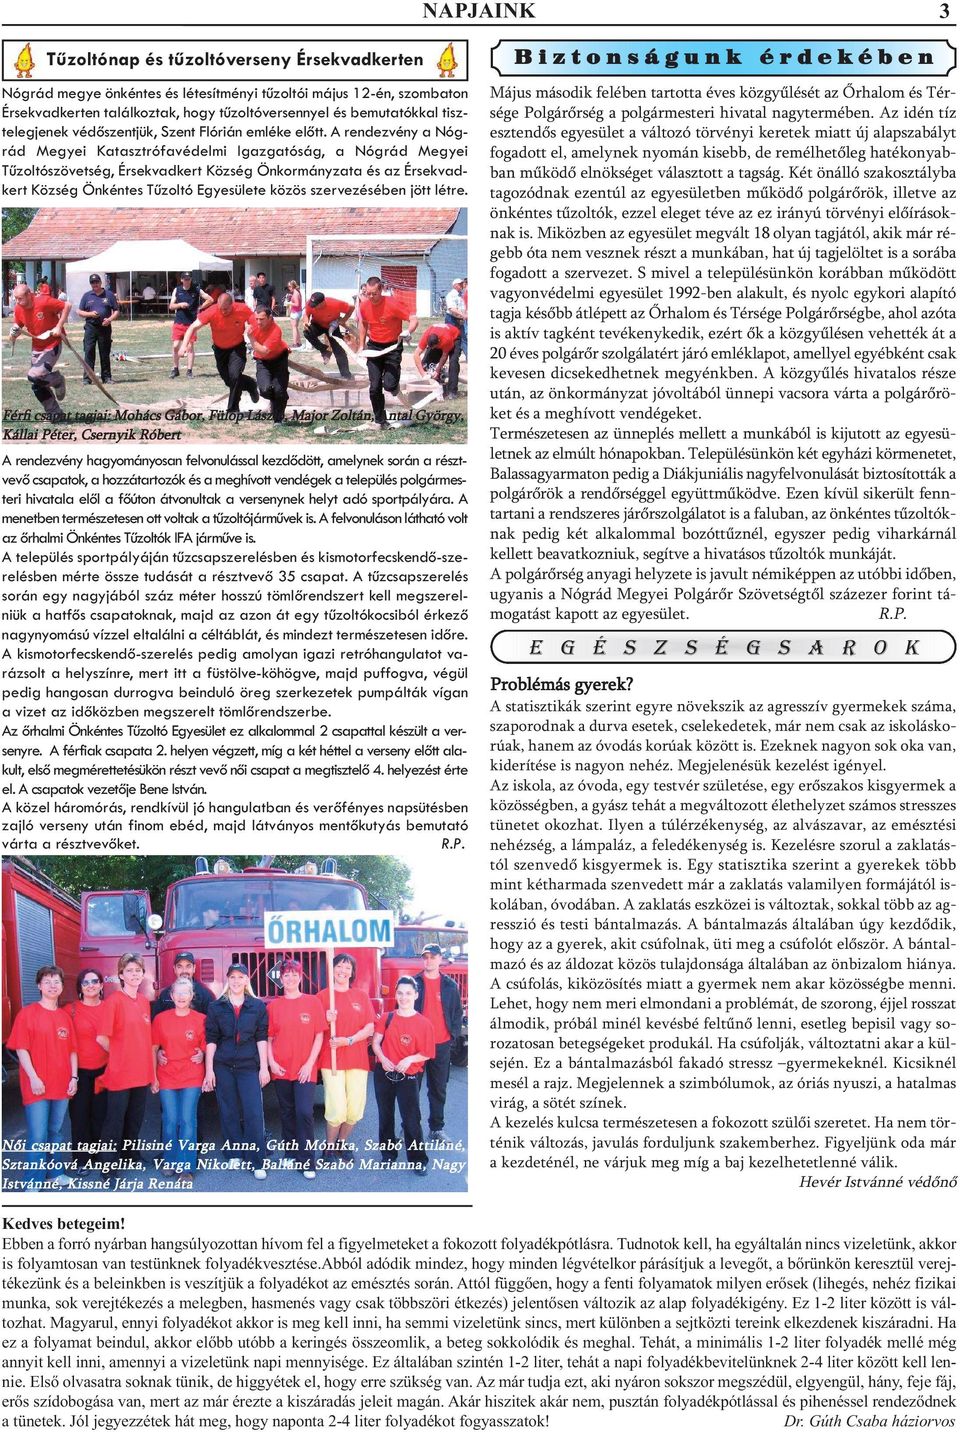 A rendezvény a Nógrád Megyei Katasztrófavédelmi Igazgatóság, a Nógrád Megyei Tűzoltószövetség, Érsekvadkert Község Önkormányzata és az Érsekvadkert Község Önkéntes Tűzoltó Egyesülete közös